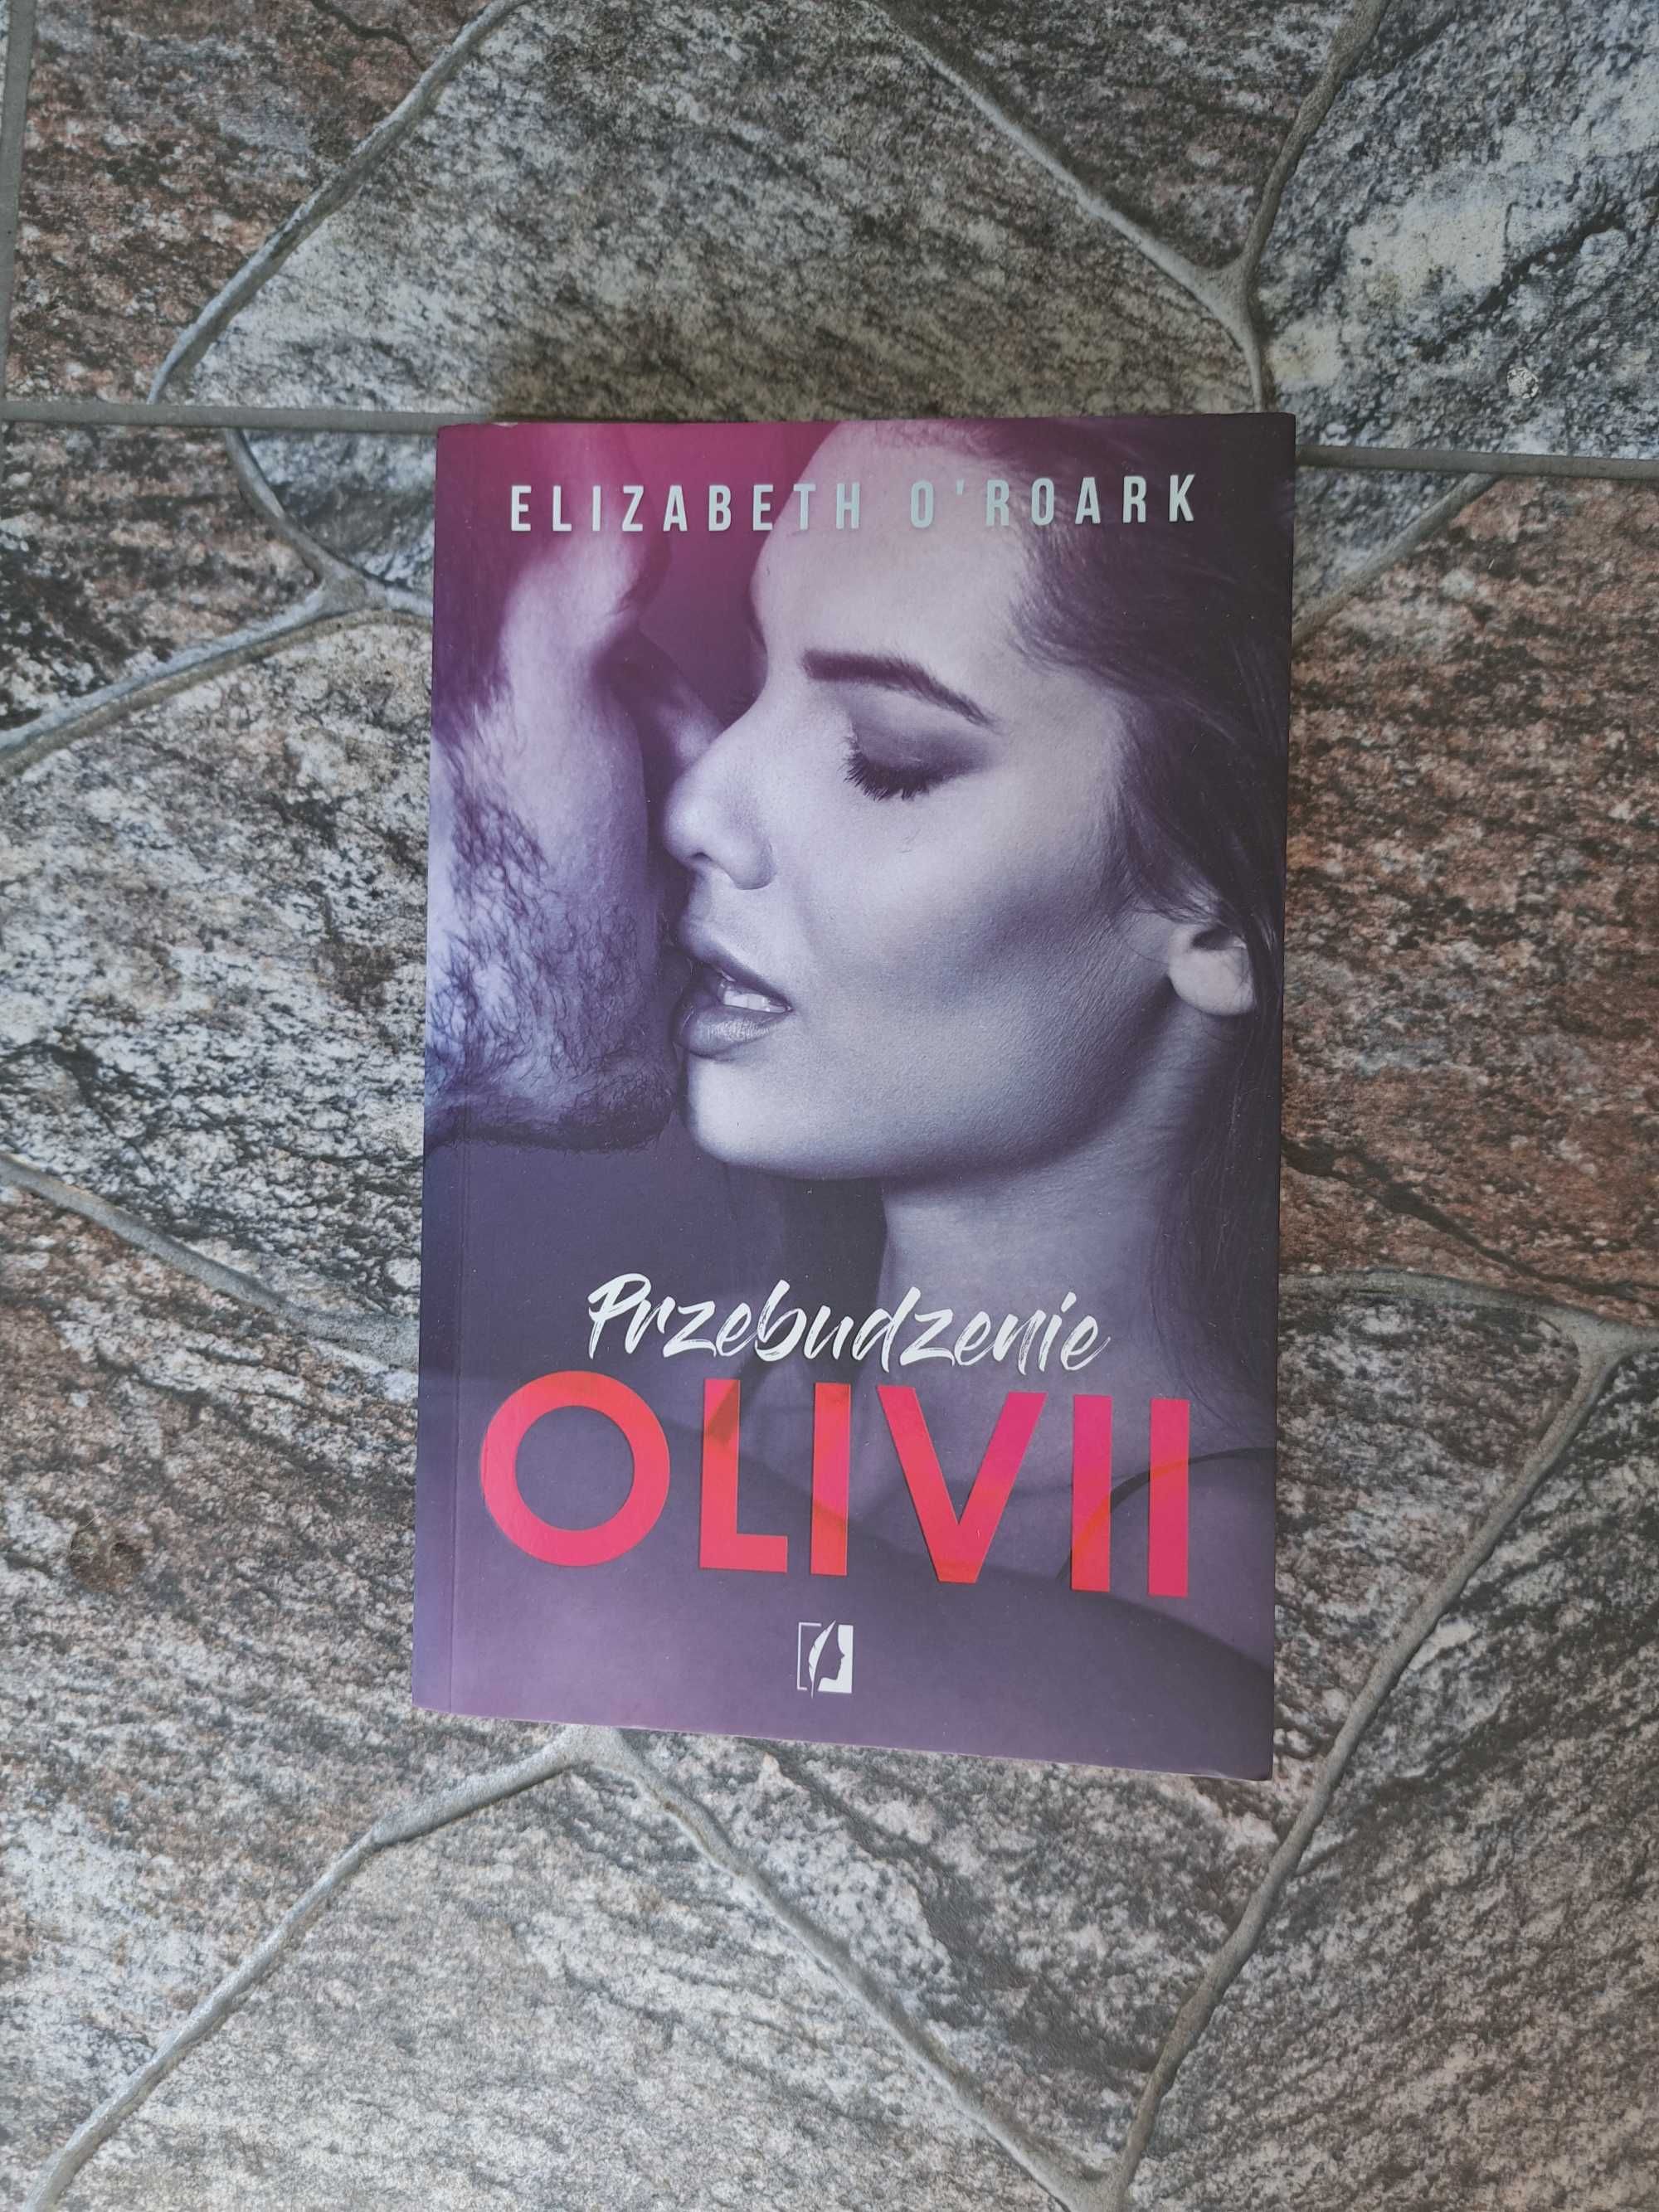 Książka ,, Przebudzenie Olivii" Elizabeth O'Roark